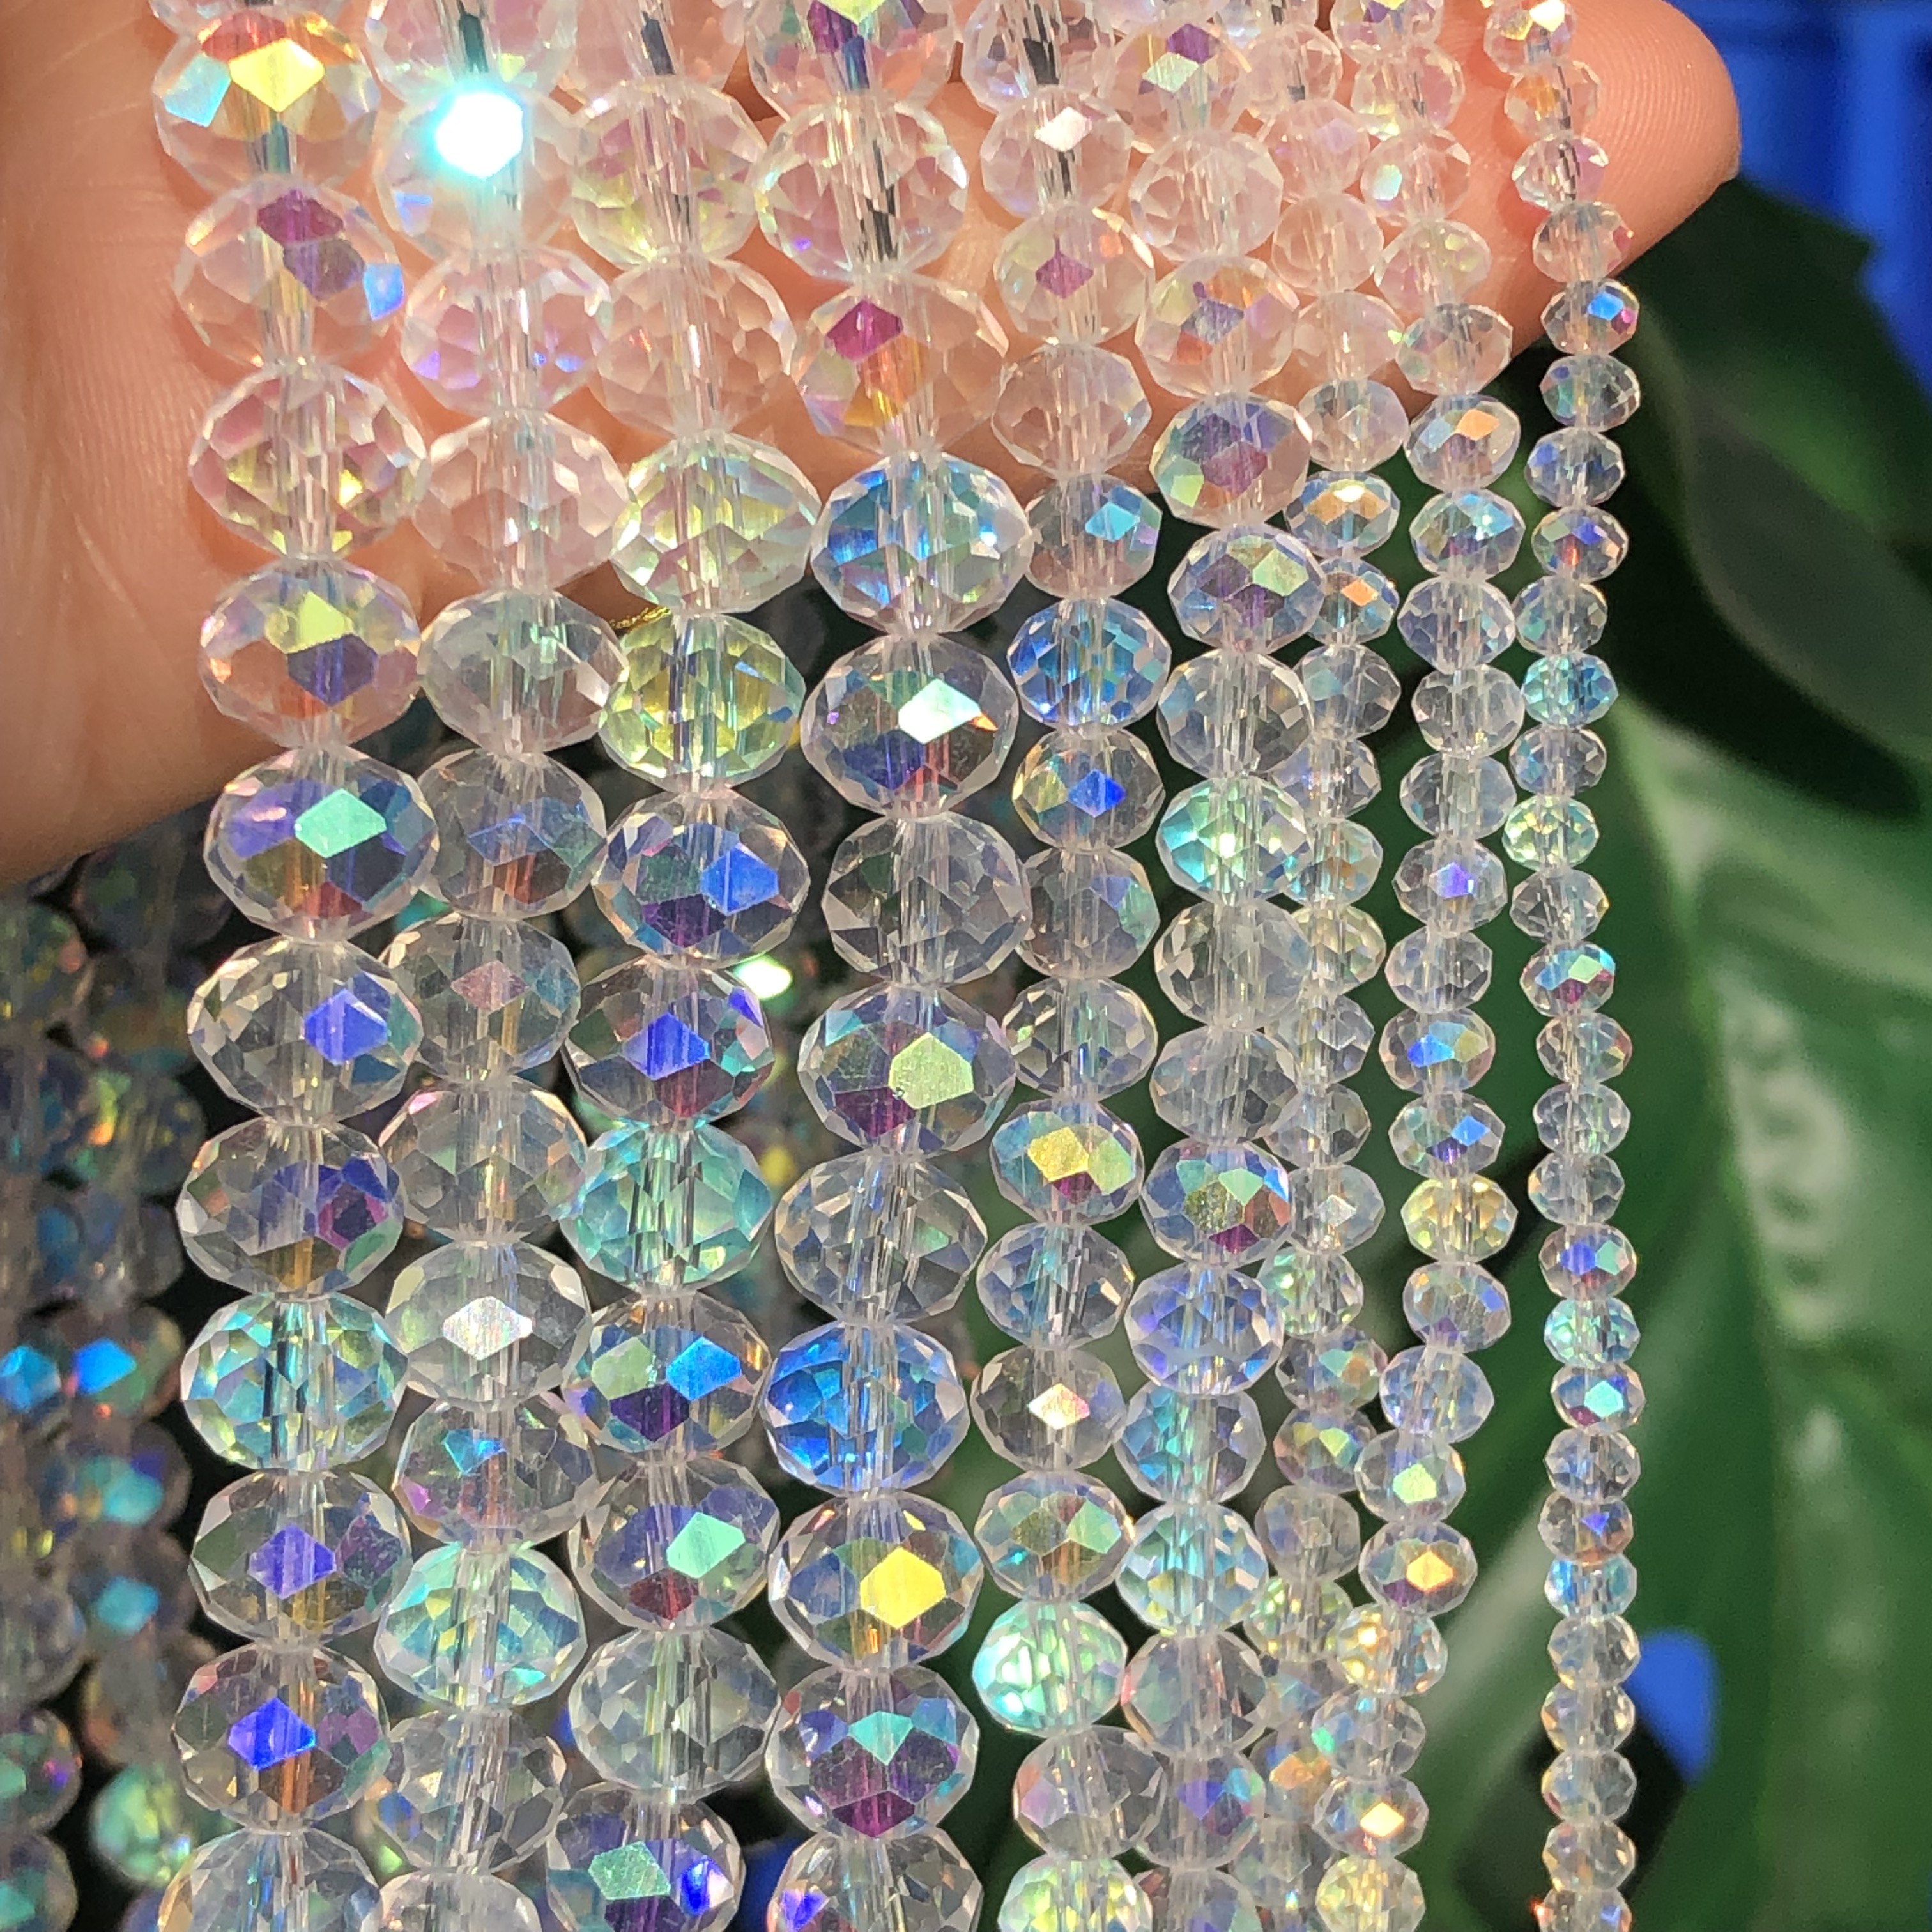 Swarovski Crystal Glass Jewelry Making Beads for sale